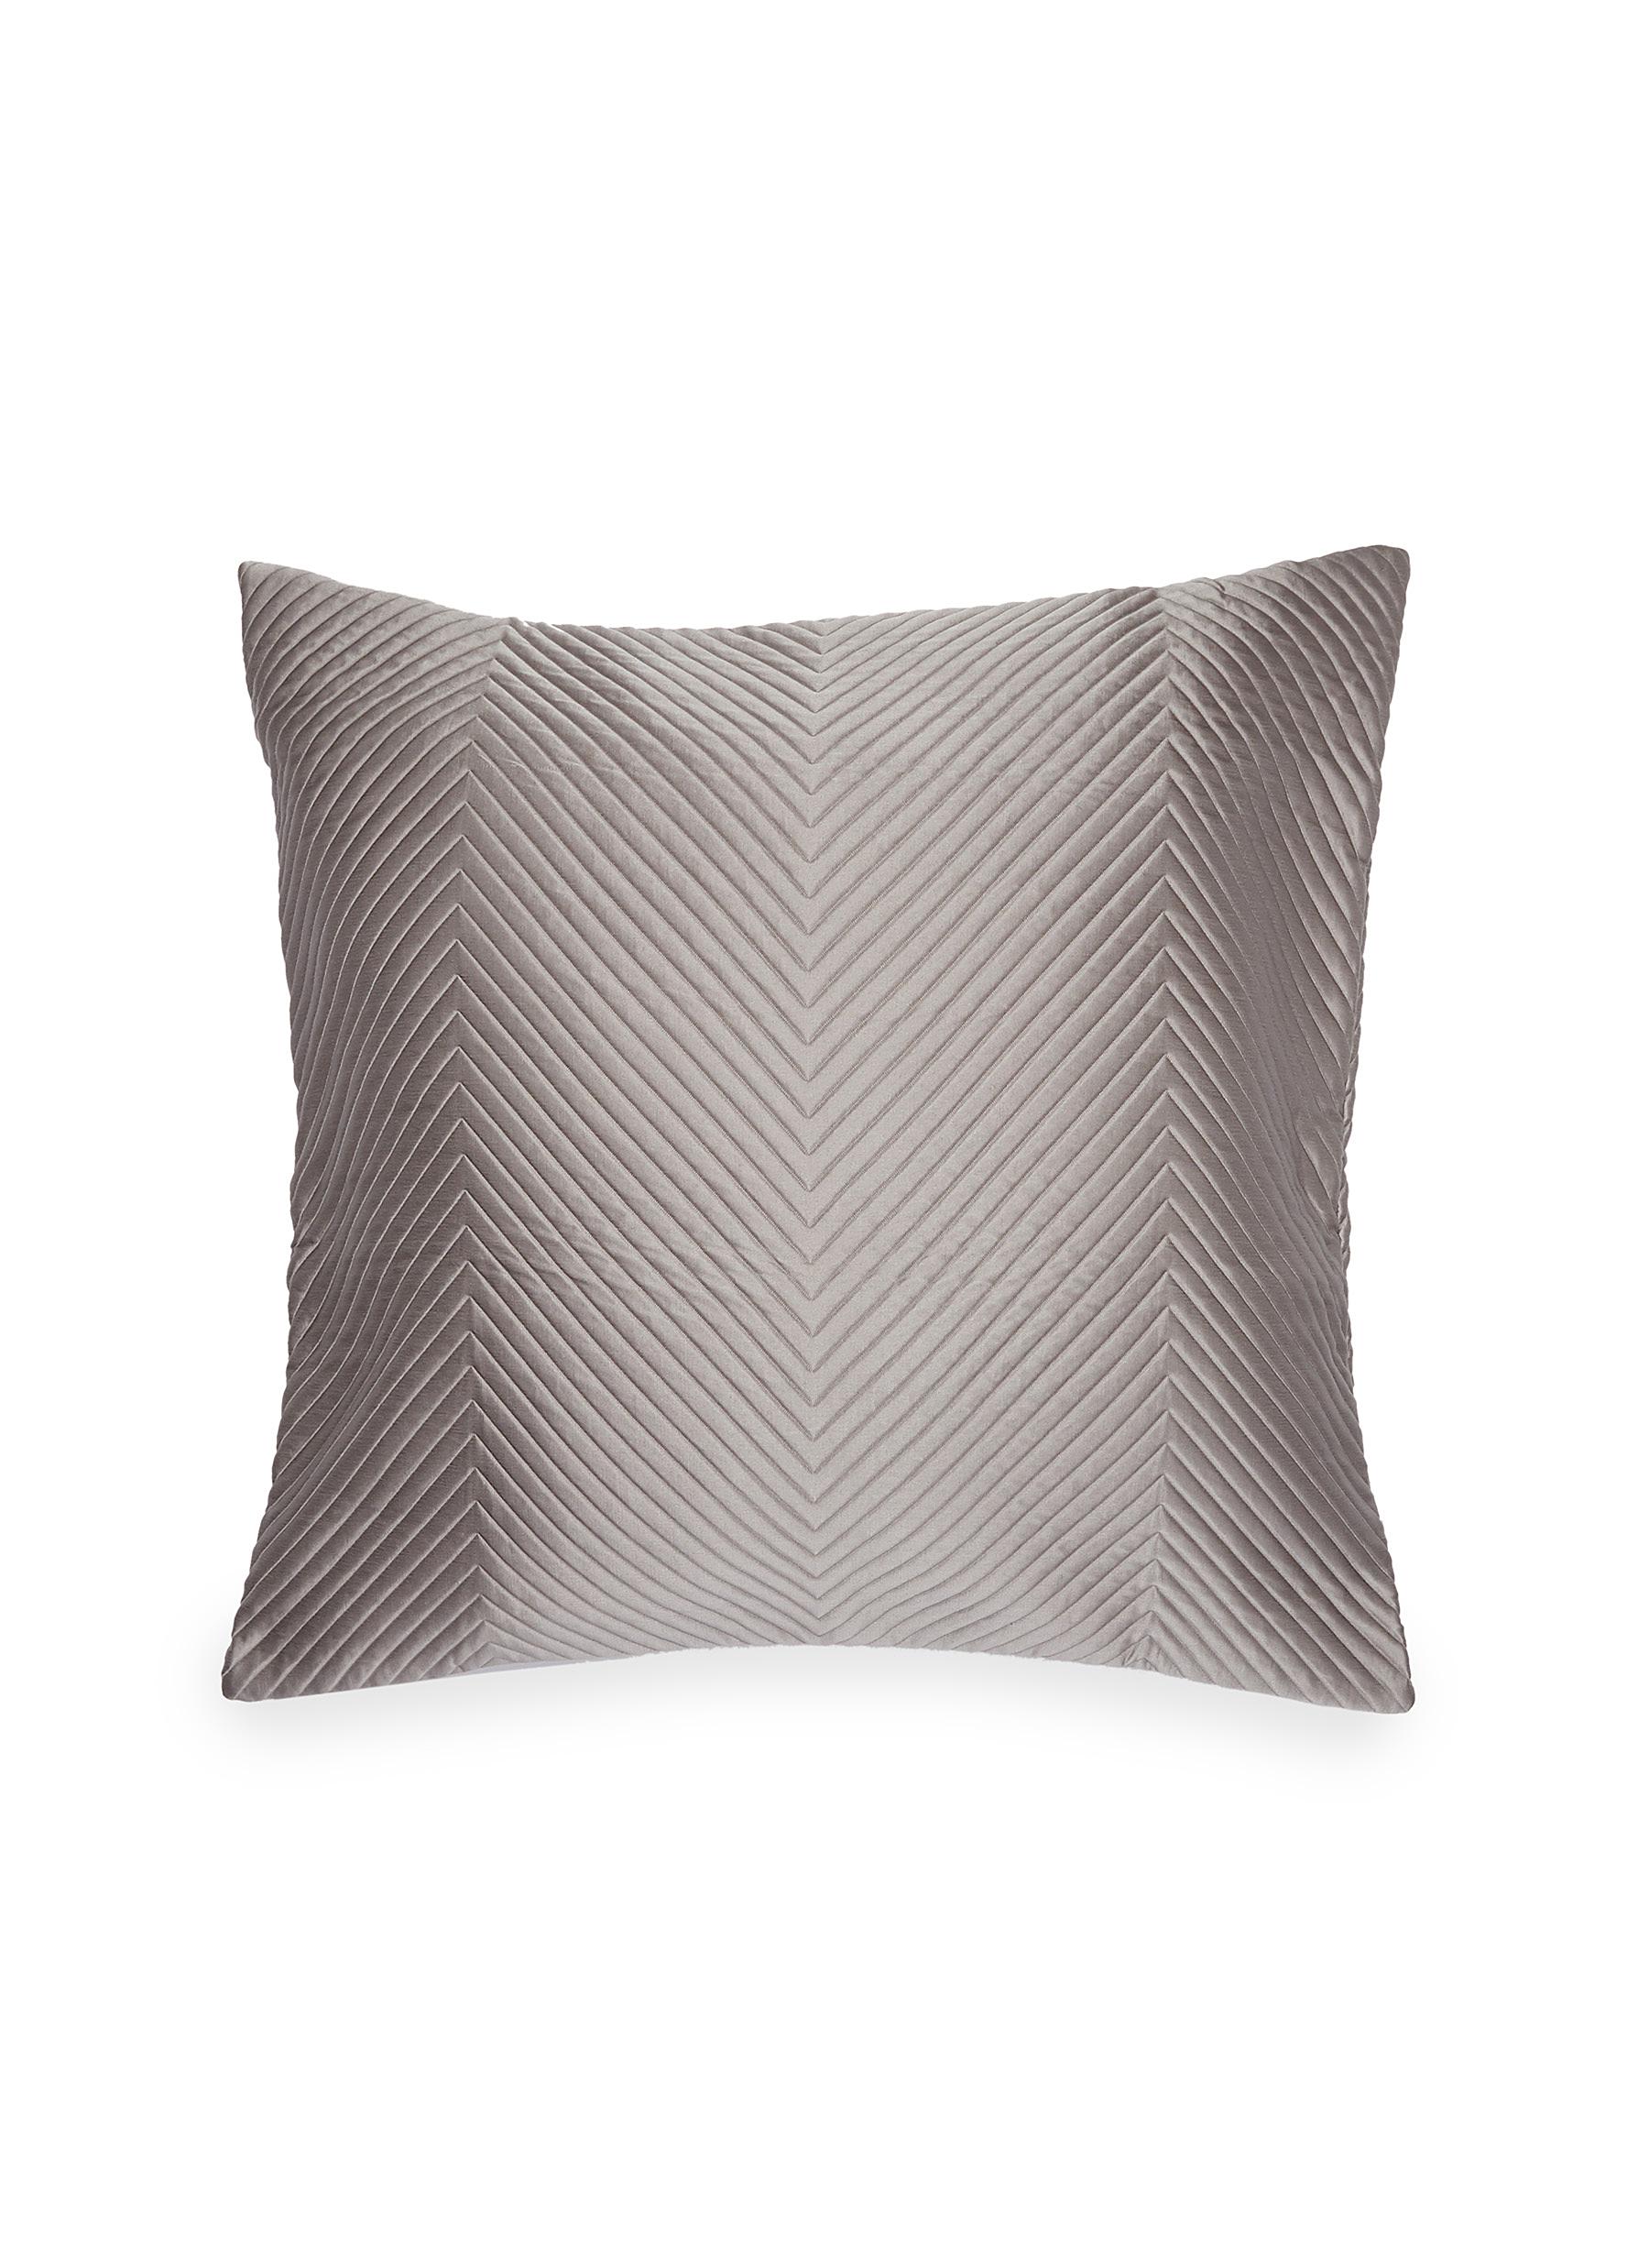 Luxury herringbone cushion - Slate Grey